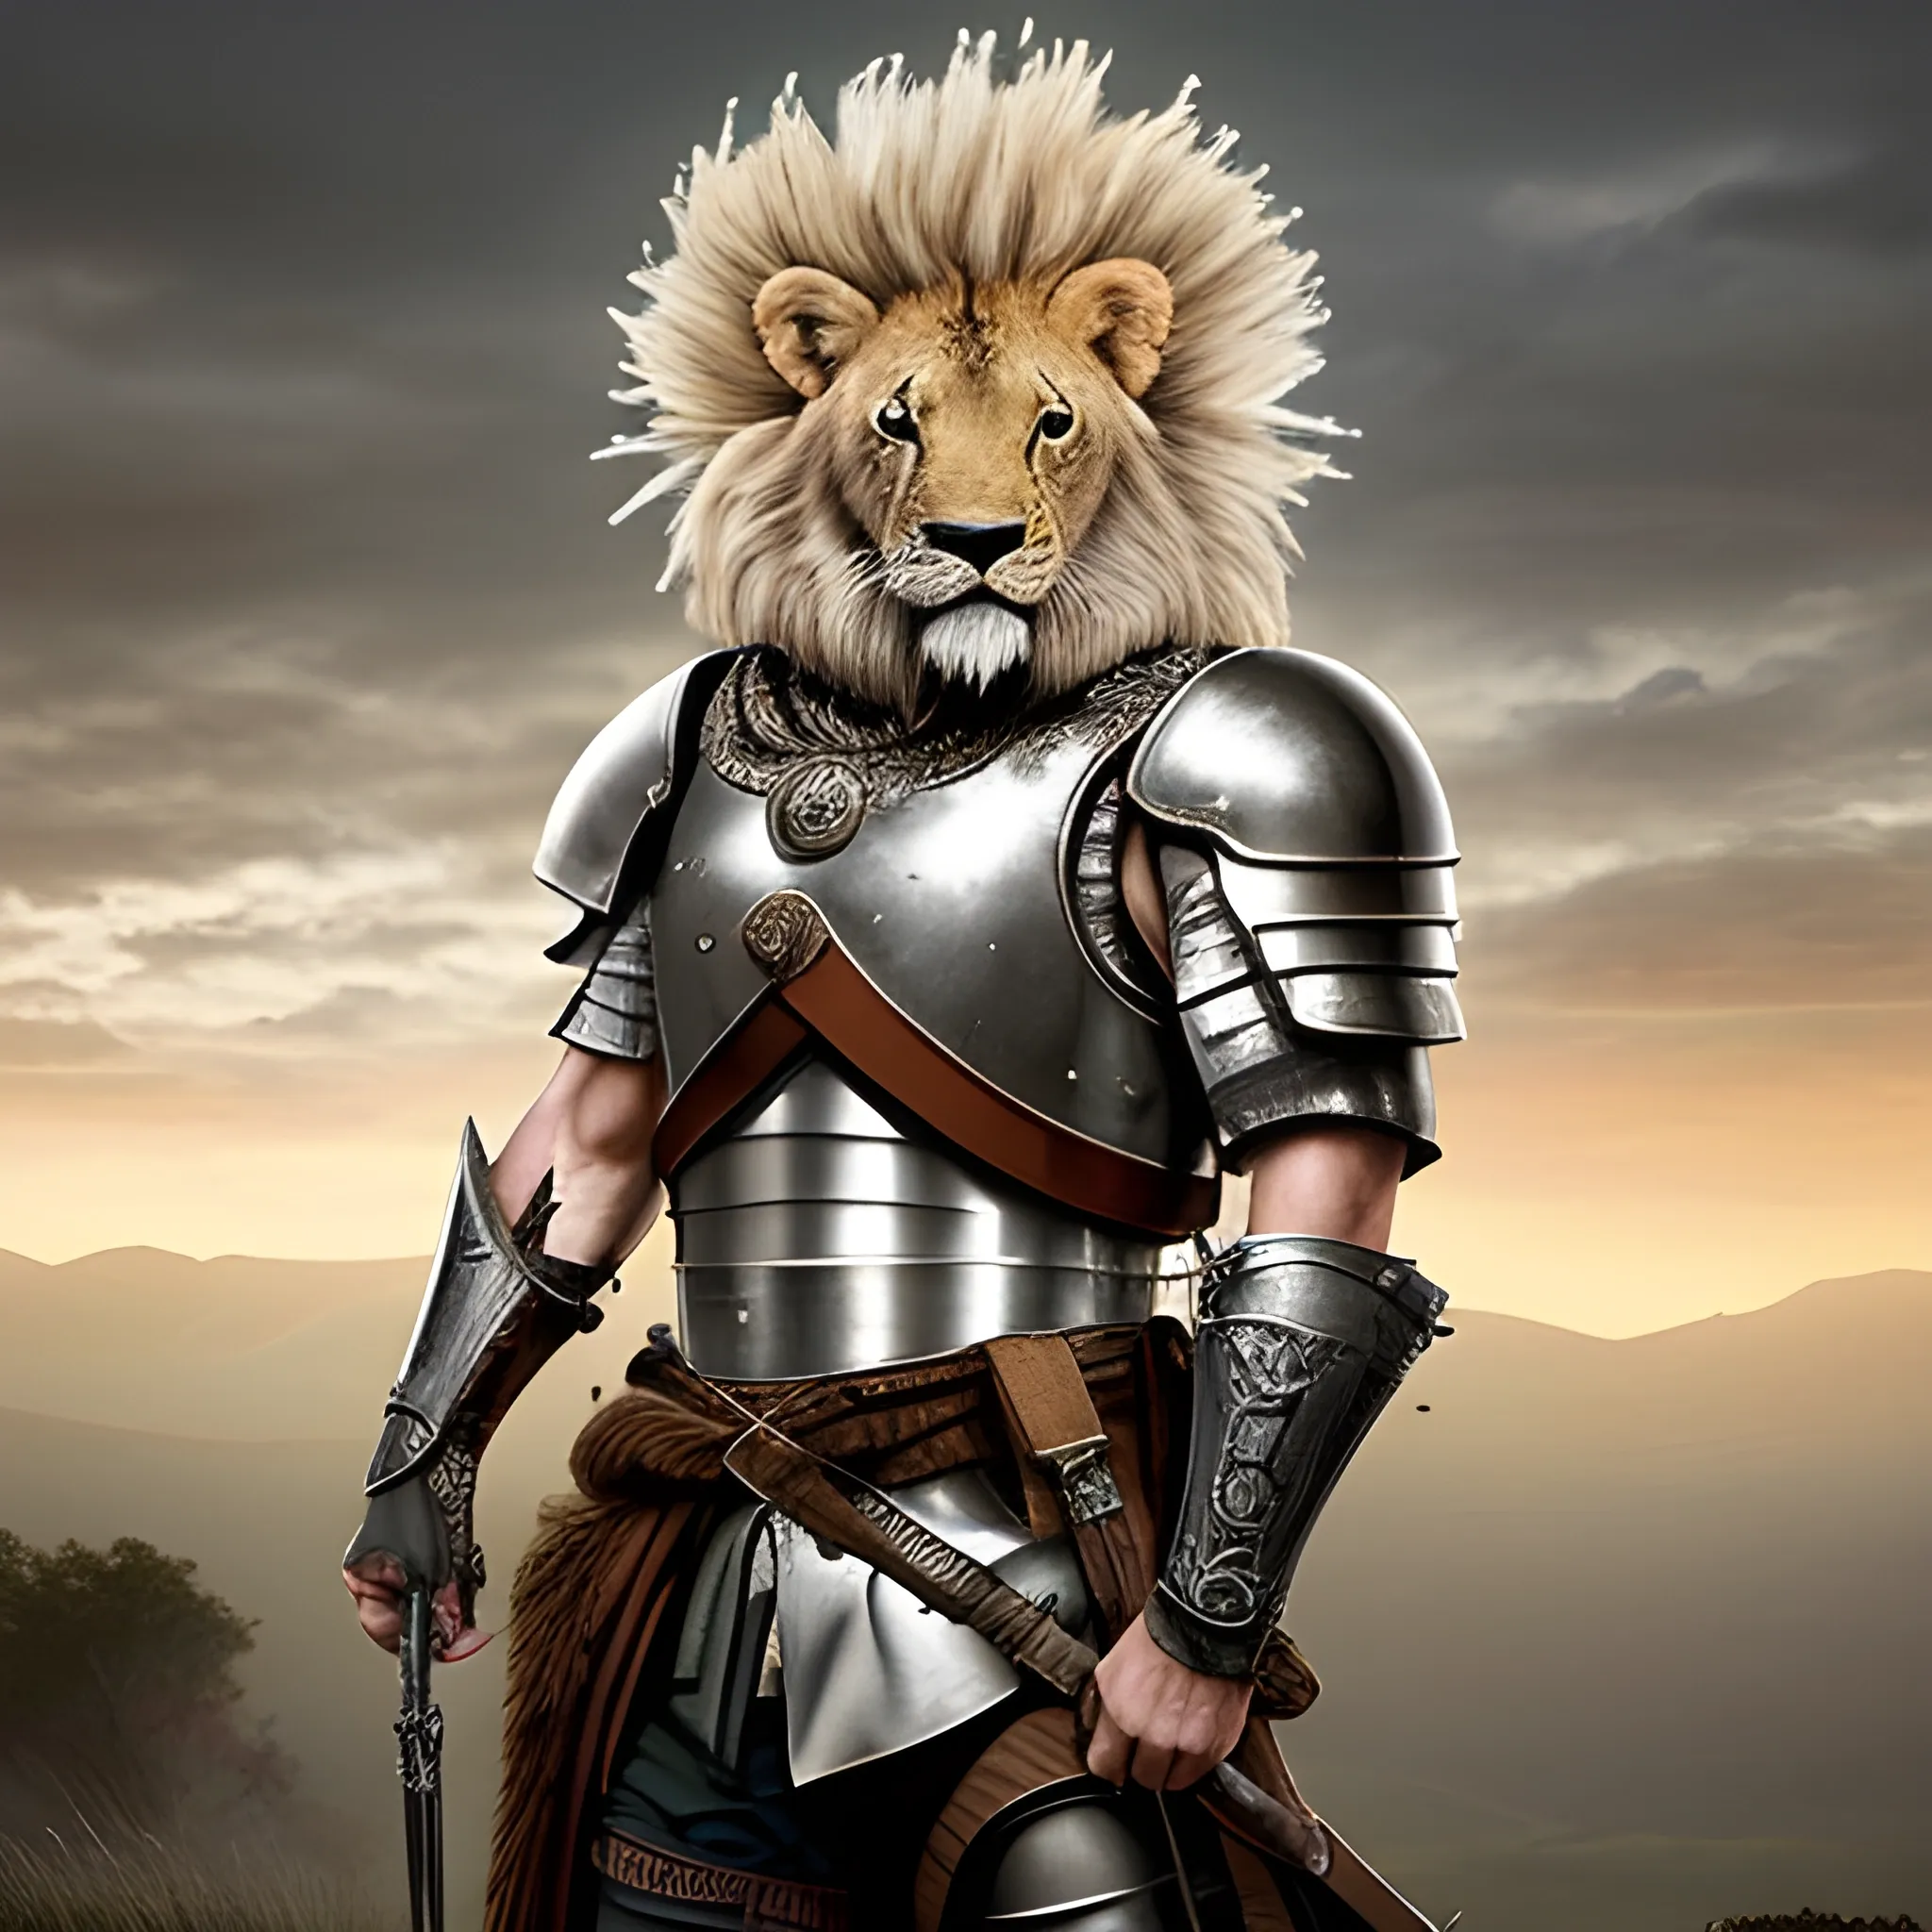 Diseña una imagen épica de un león con un cuerpo fuerte y musculoso lleno de marcas de guerra, con armadura reluciente y un escudo majestuoso, listo para enfrentarse a cualquier desafío